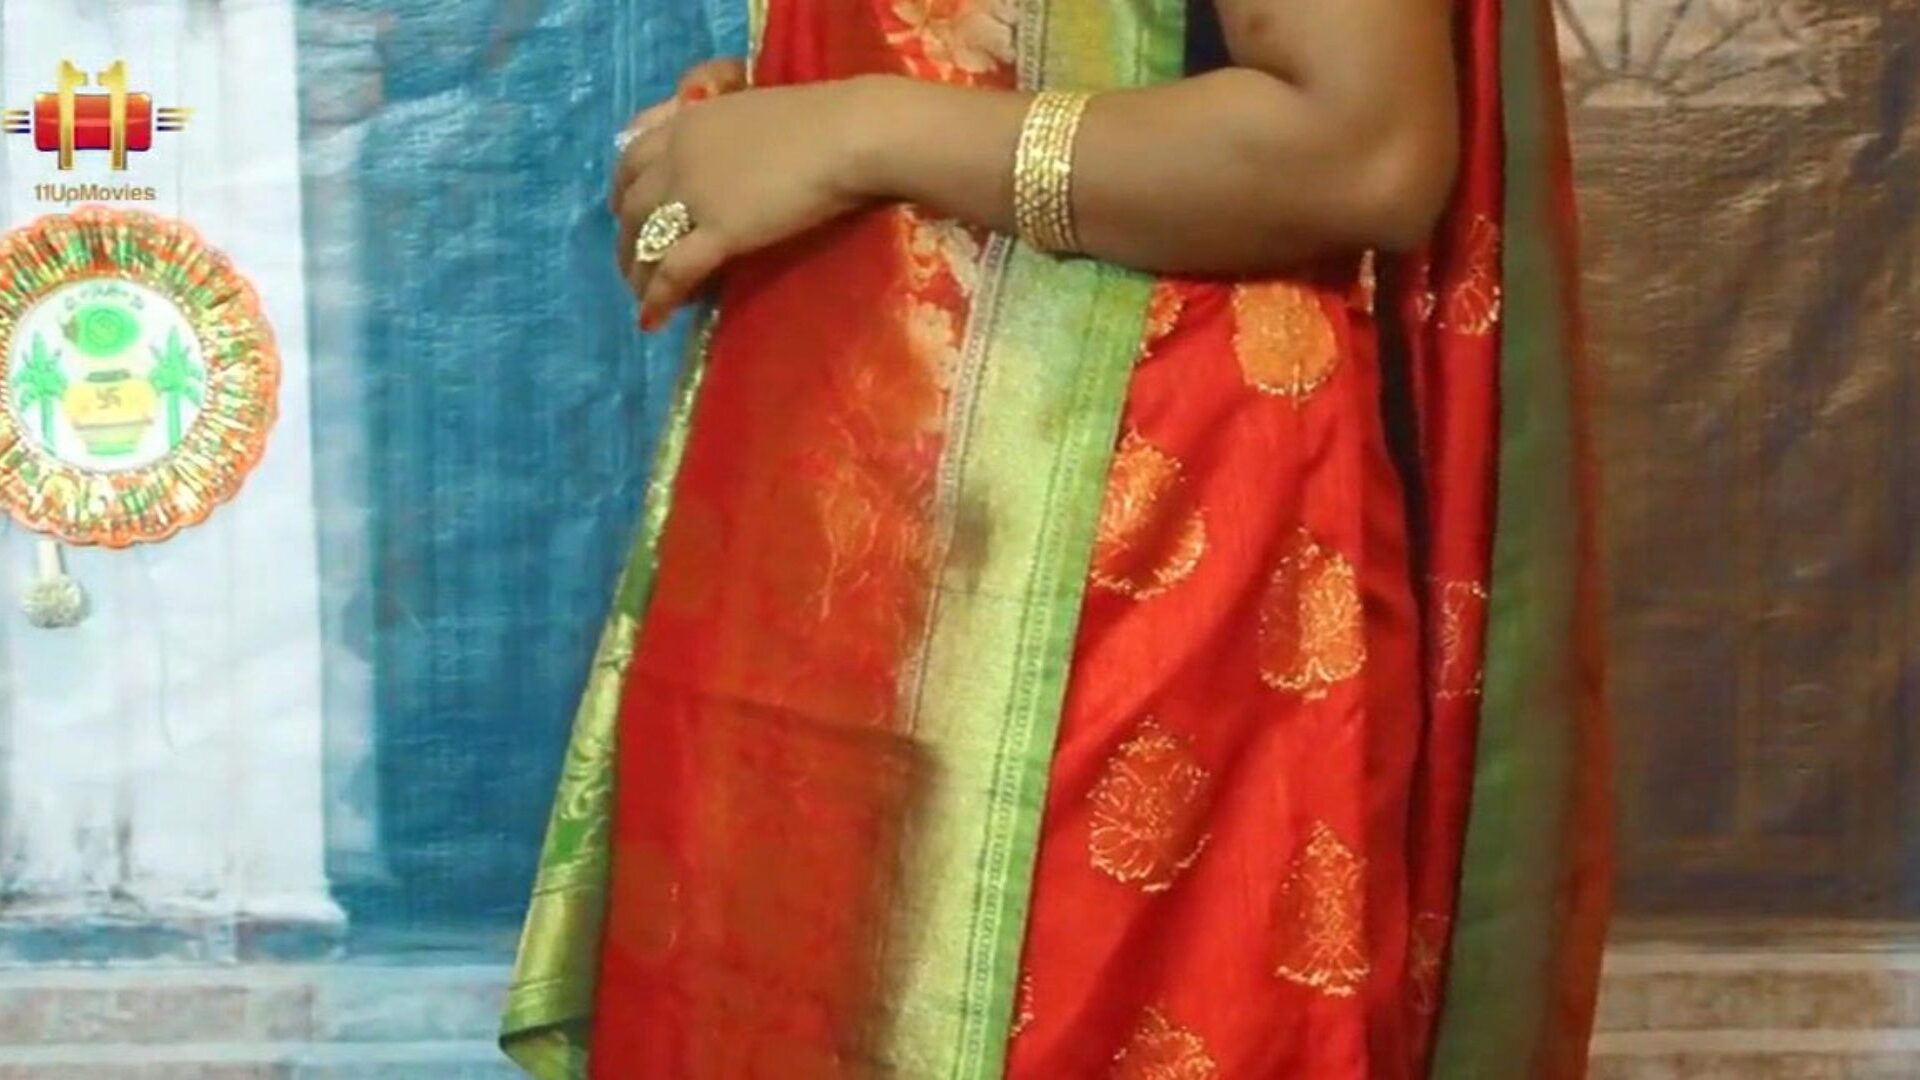 индийский тетенька рот открывает сари и блузка маллу зрелые тетенька указатель сестры пупок живот